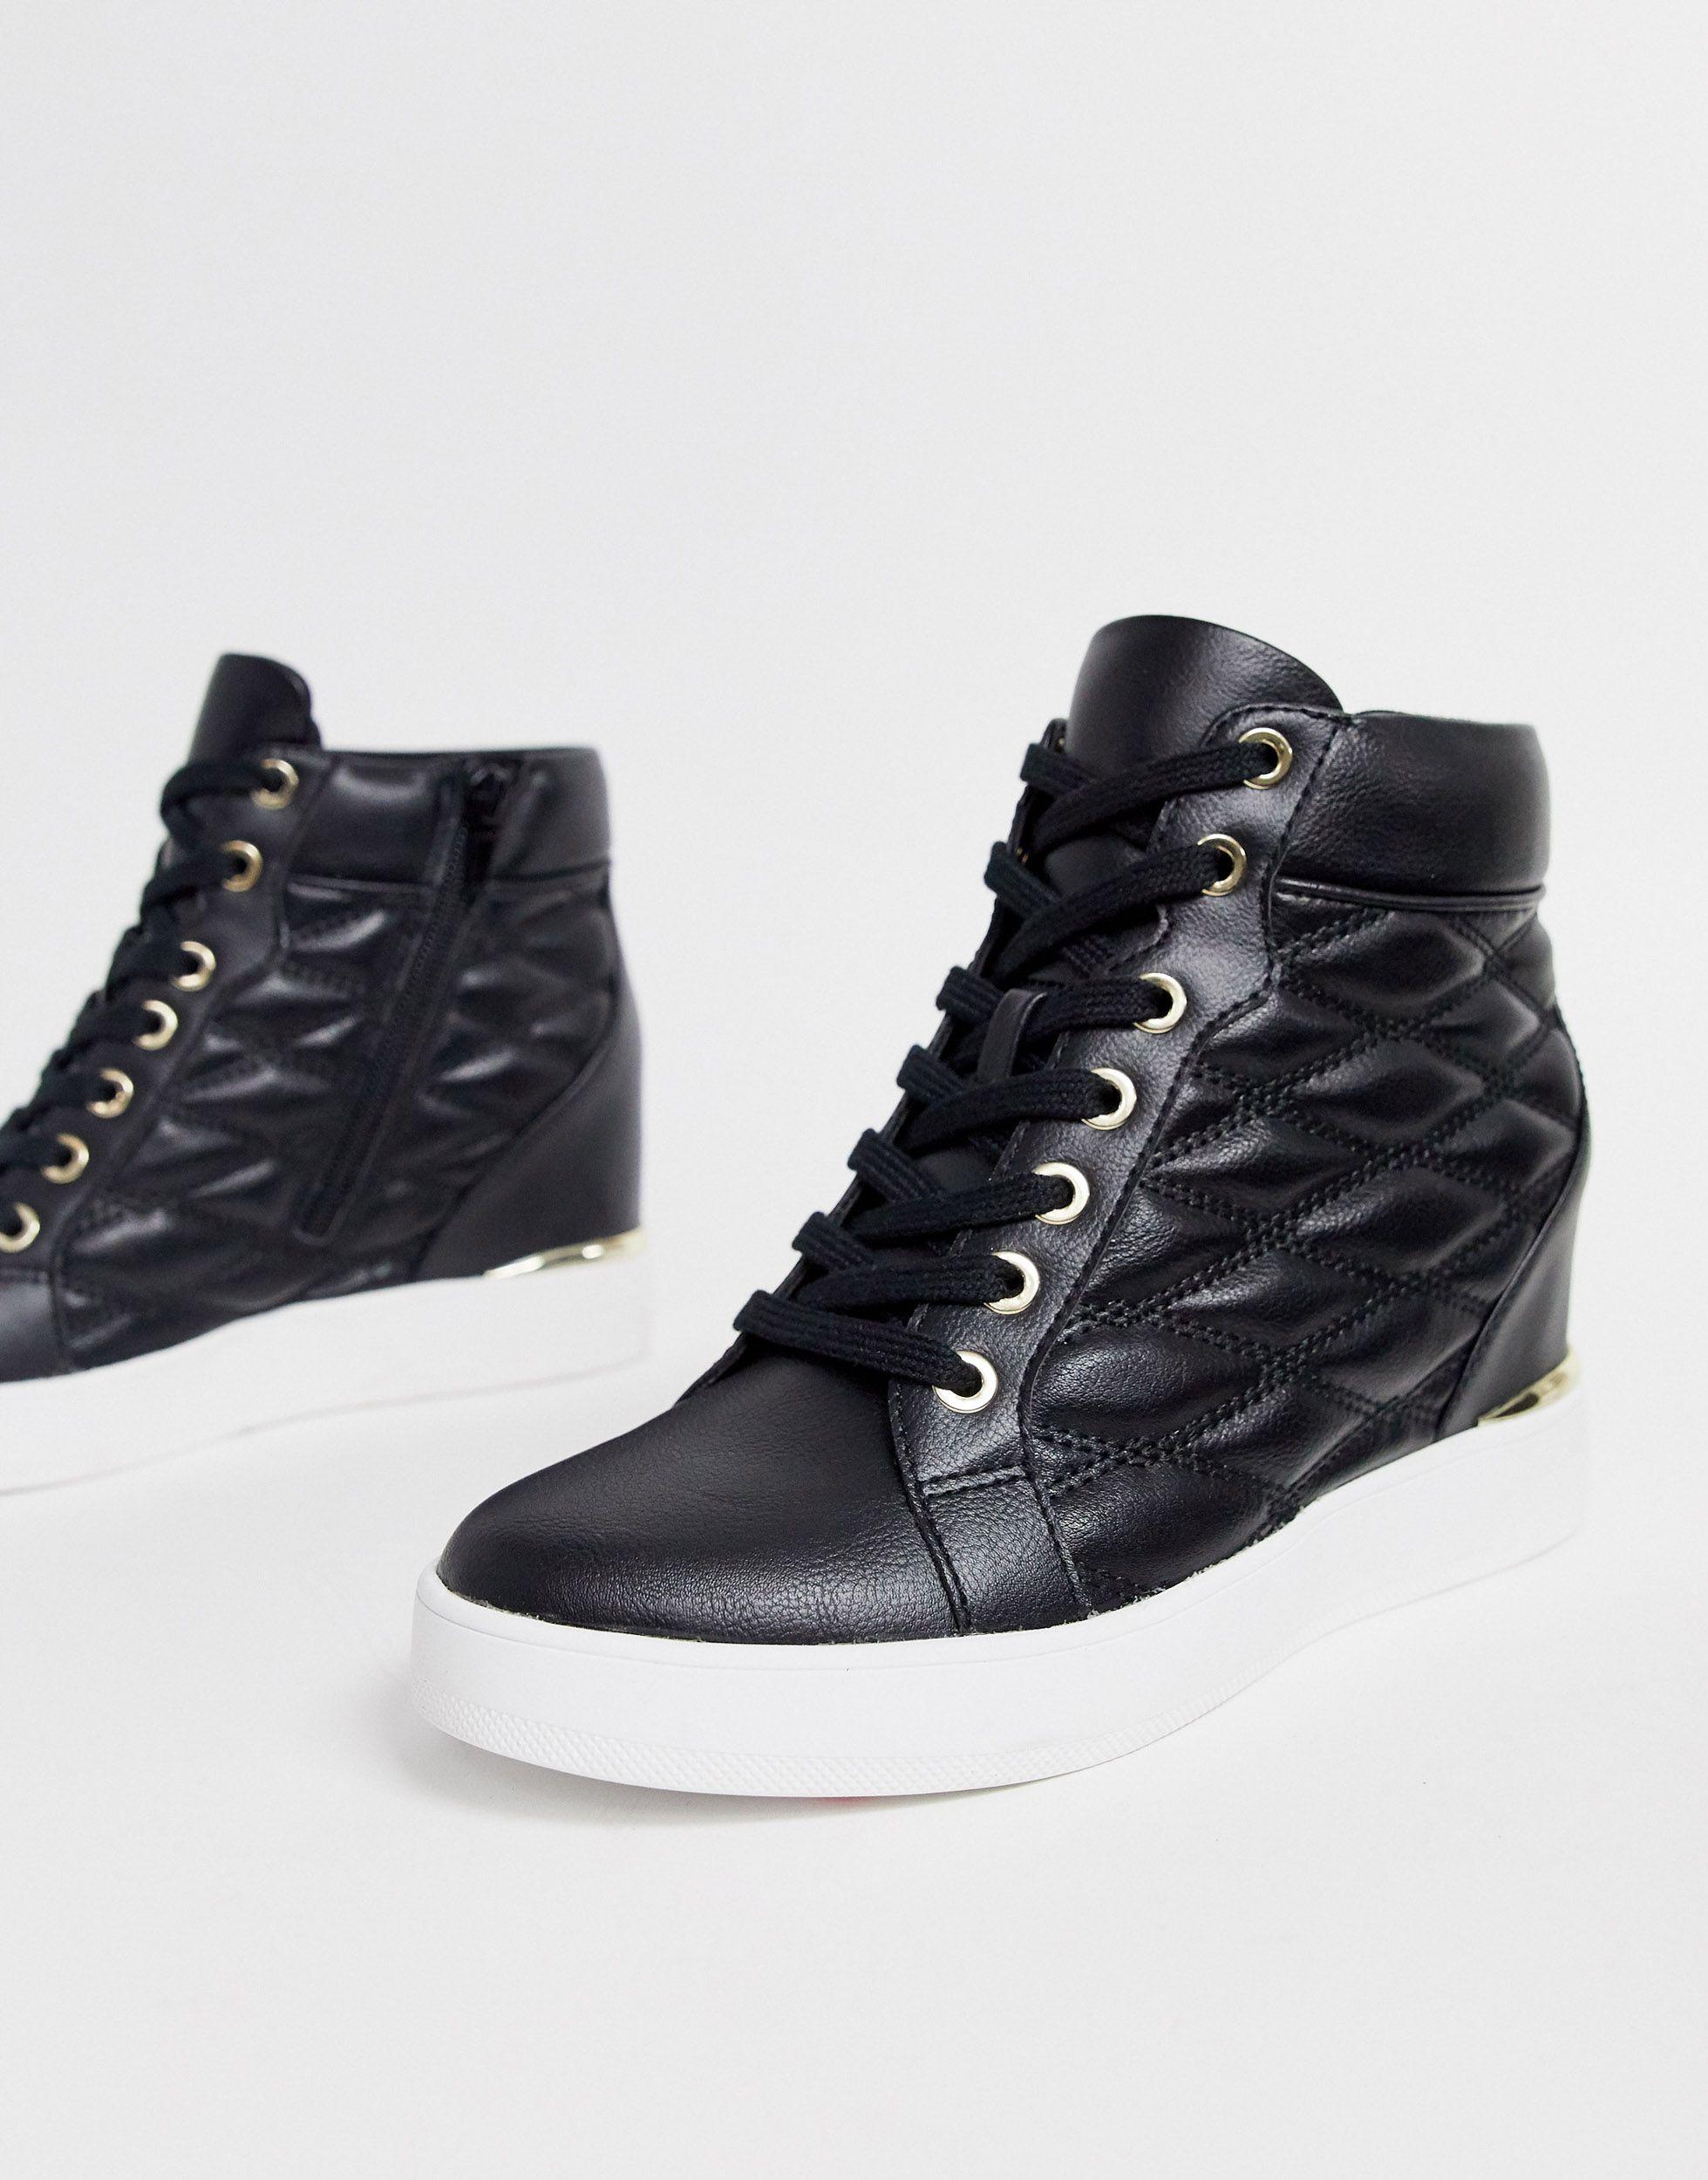 Aldo | Shoes | Aldo Fashion Sneakers | Poshmark